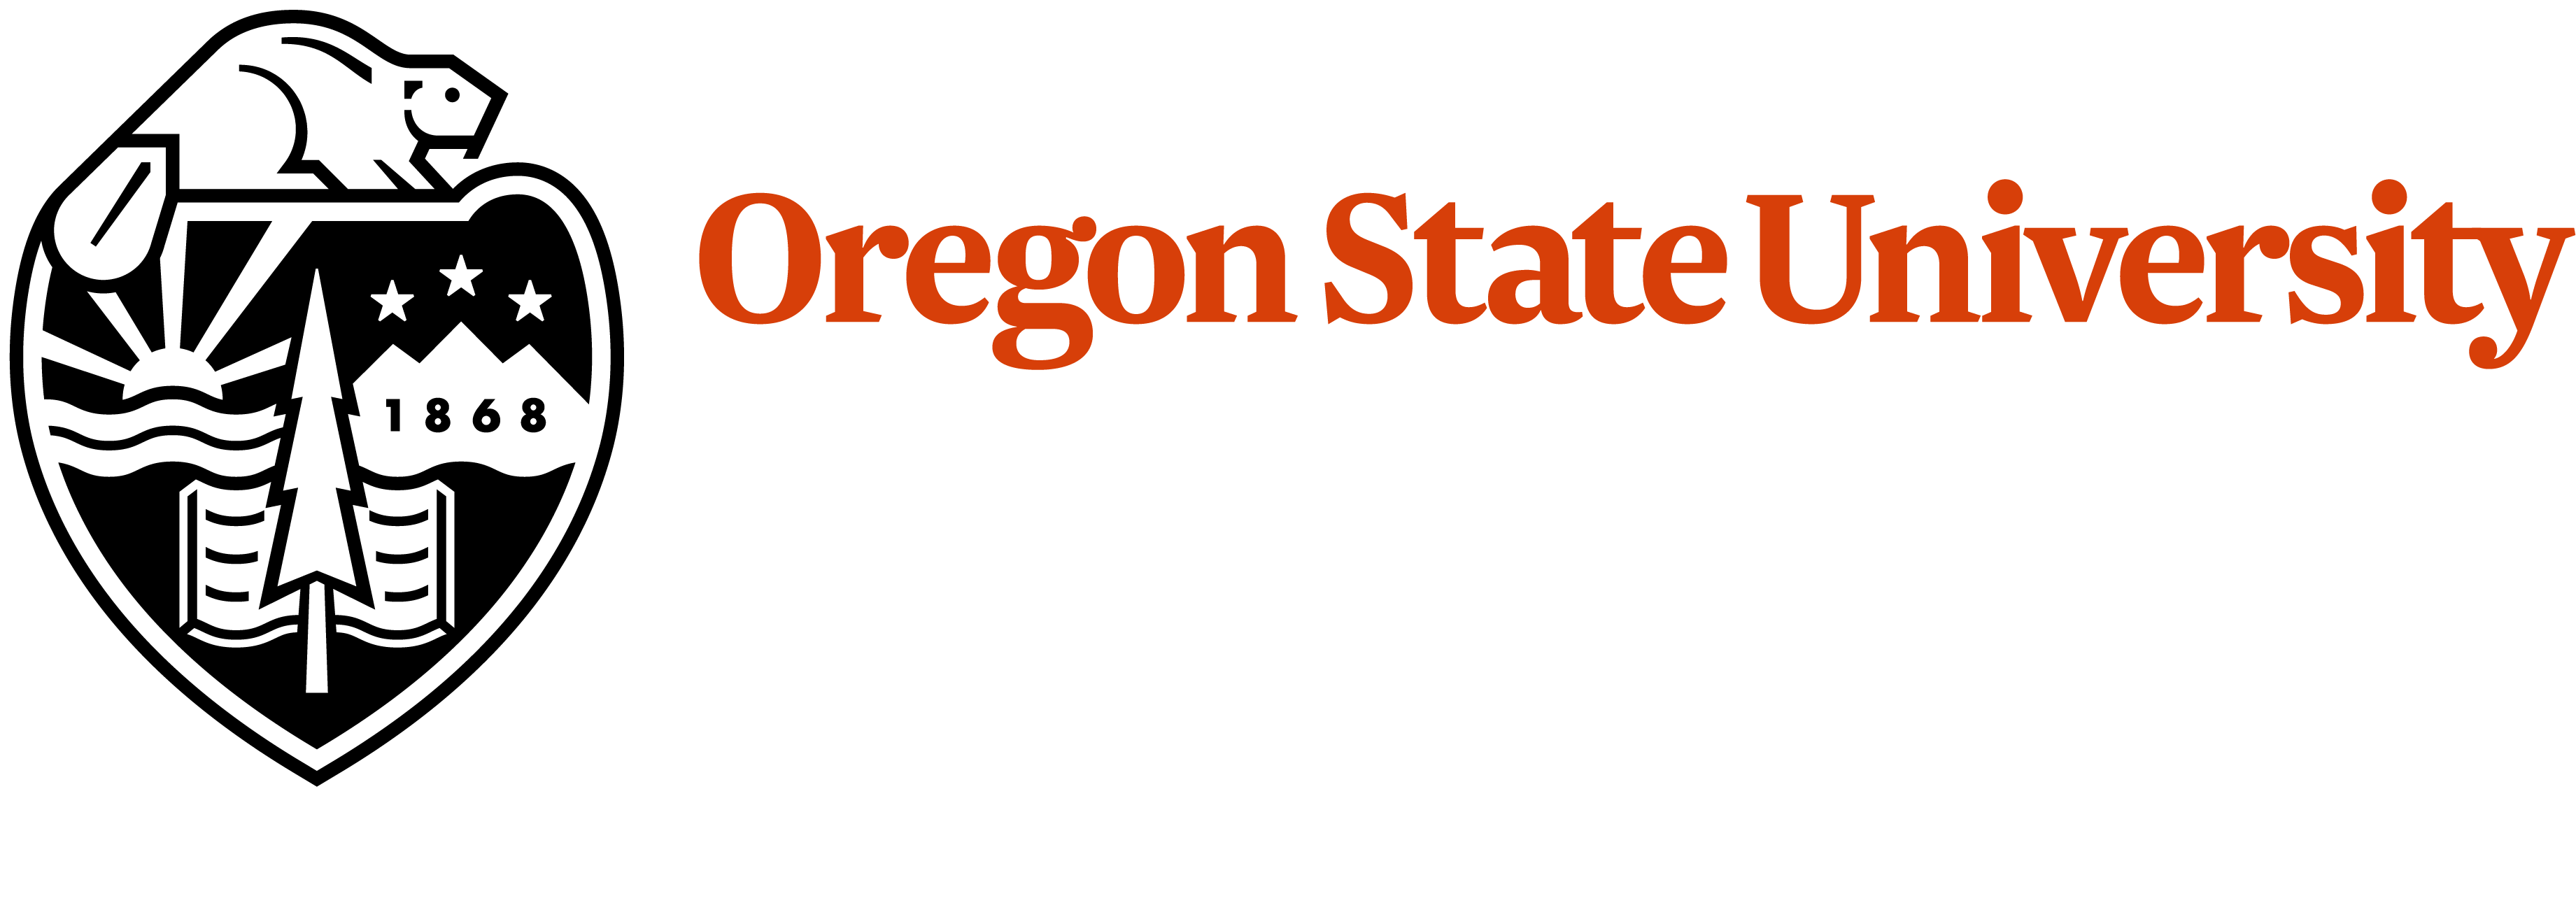 Oregon State University Seeks Agricultural Master Gardener & Home Horticulture Coordinator